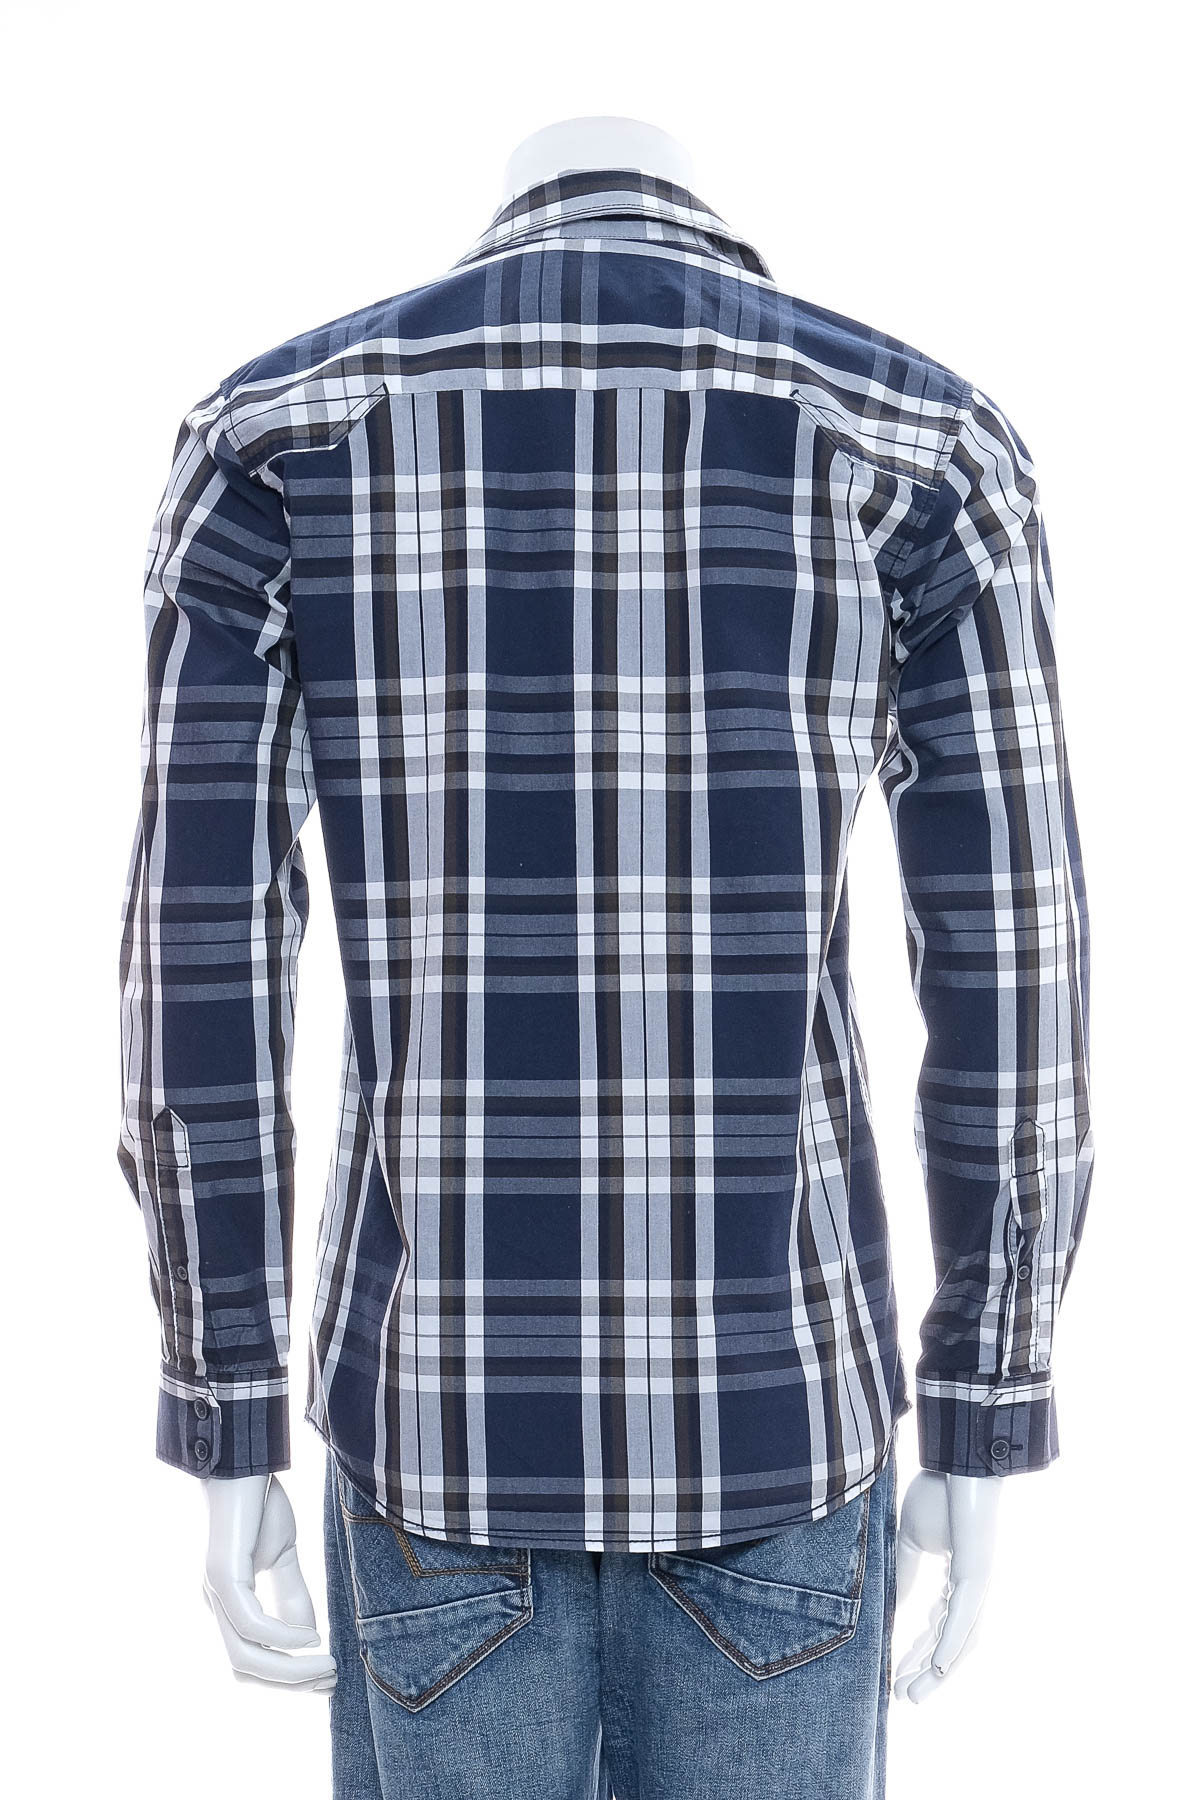 Ανδρικό πουκάμισο - CORE by Jack & Jones - 1